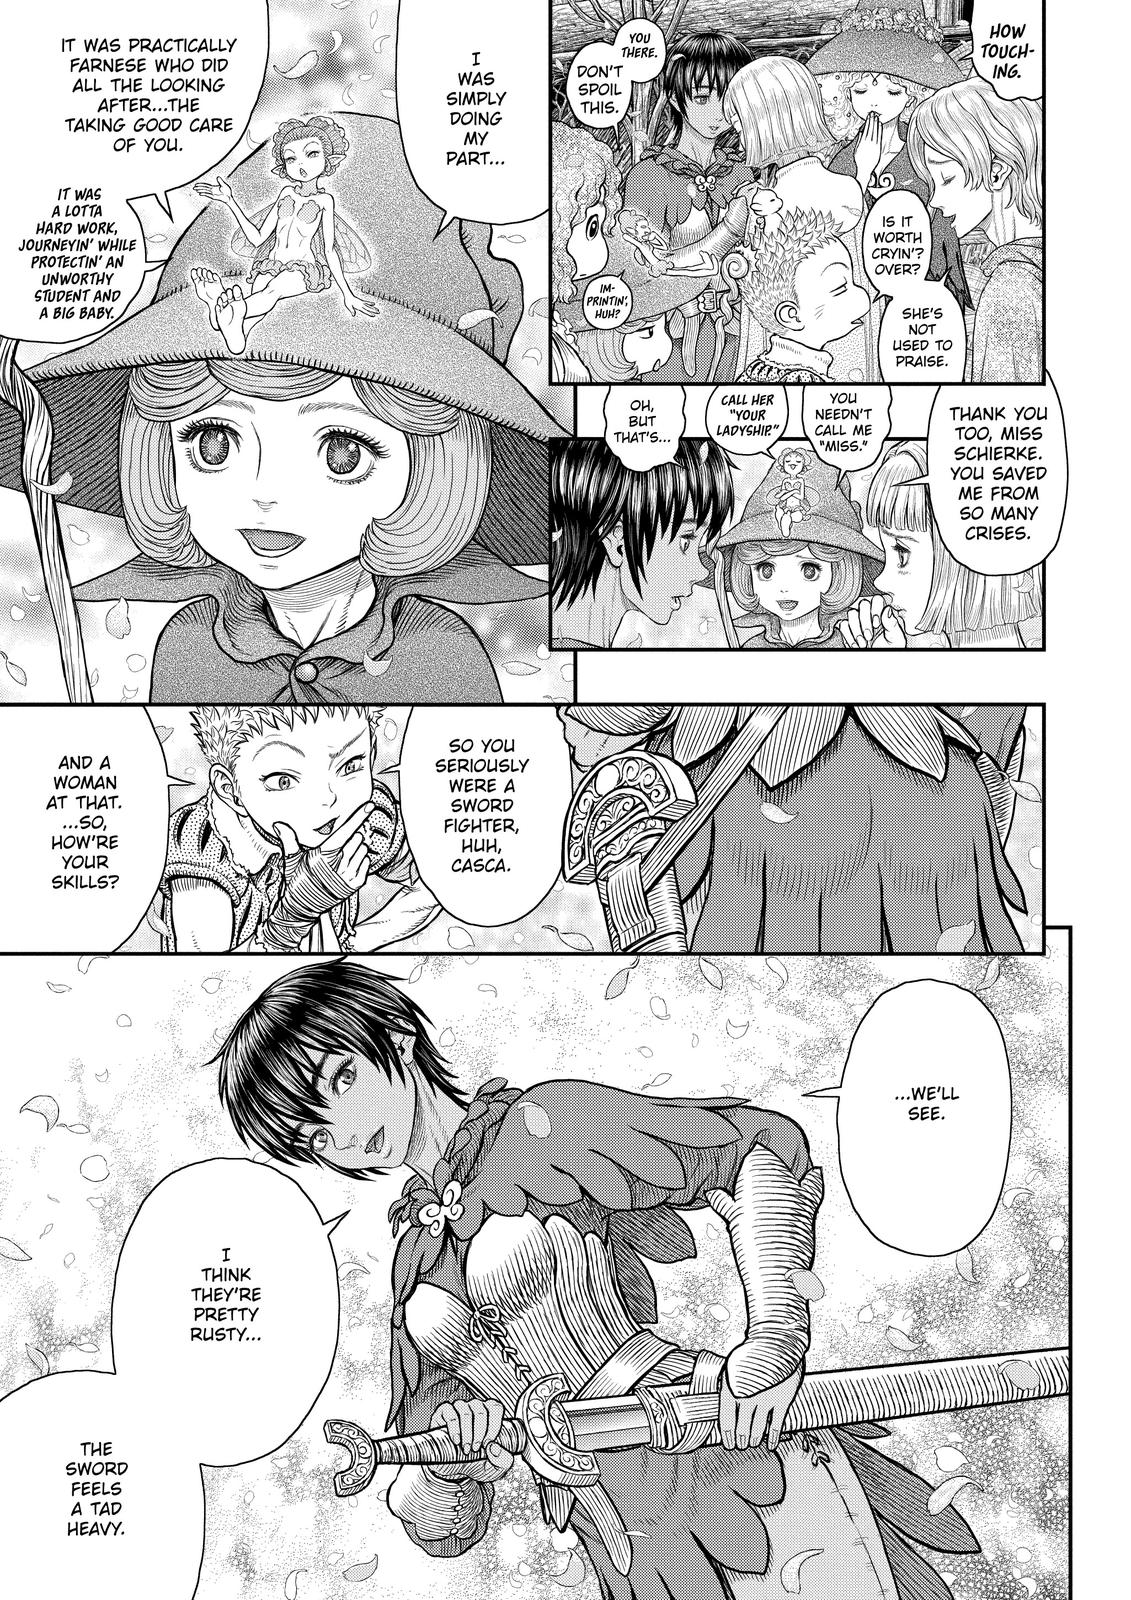 Berserk Manga Chapter 359 image 05